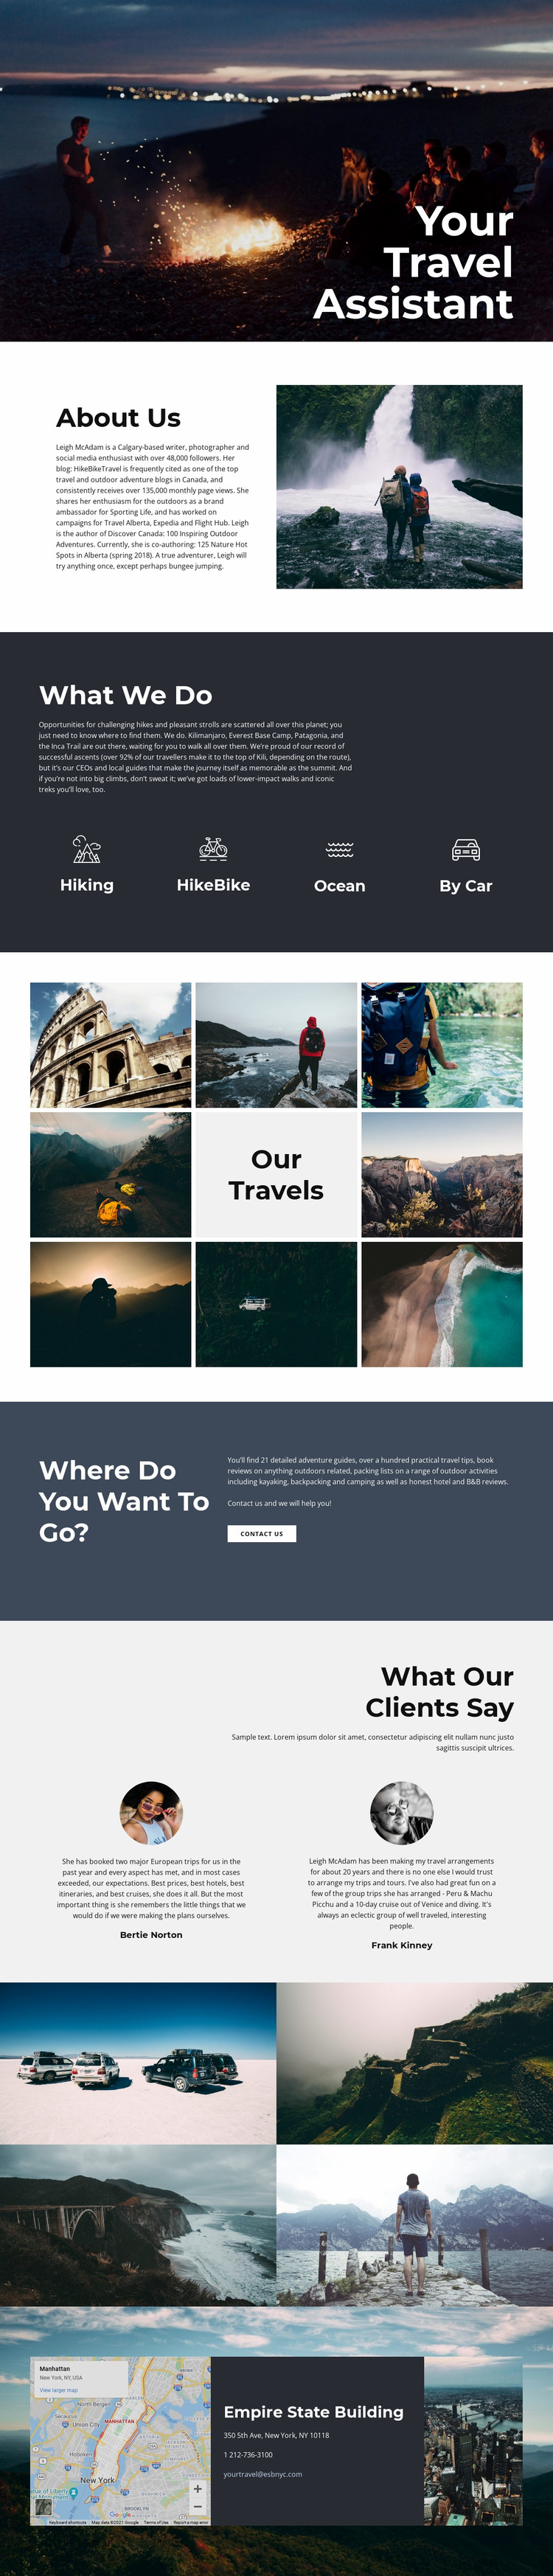 Travel Assistant Website Mockup